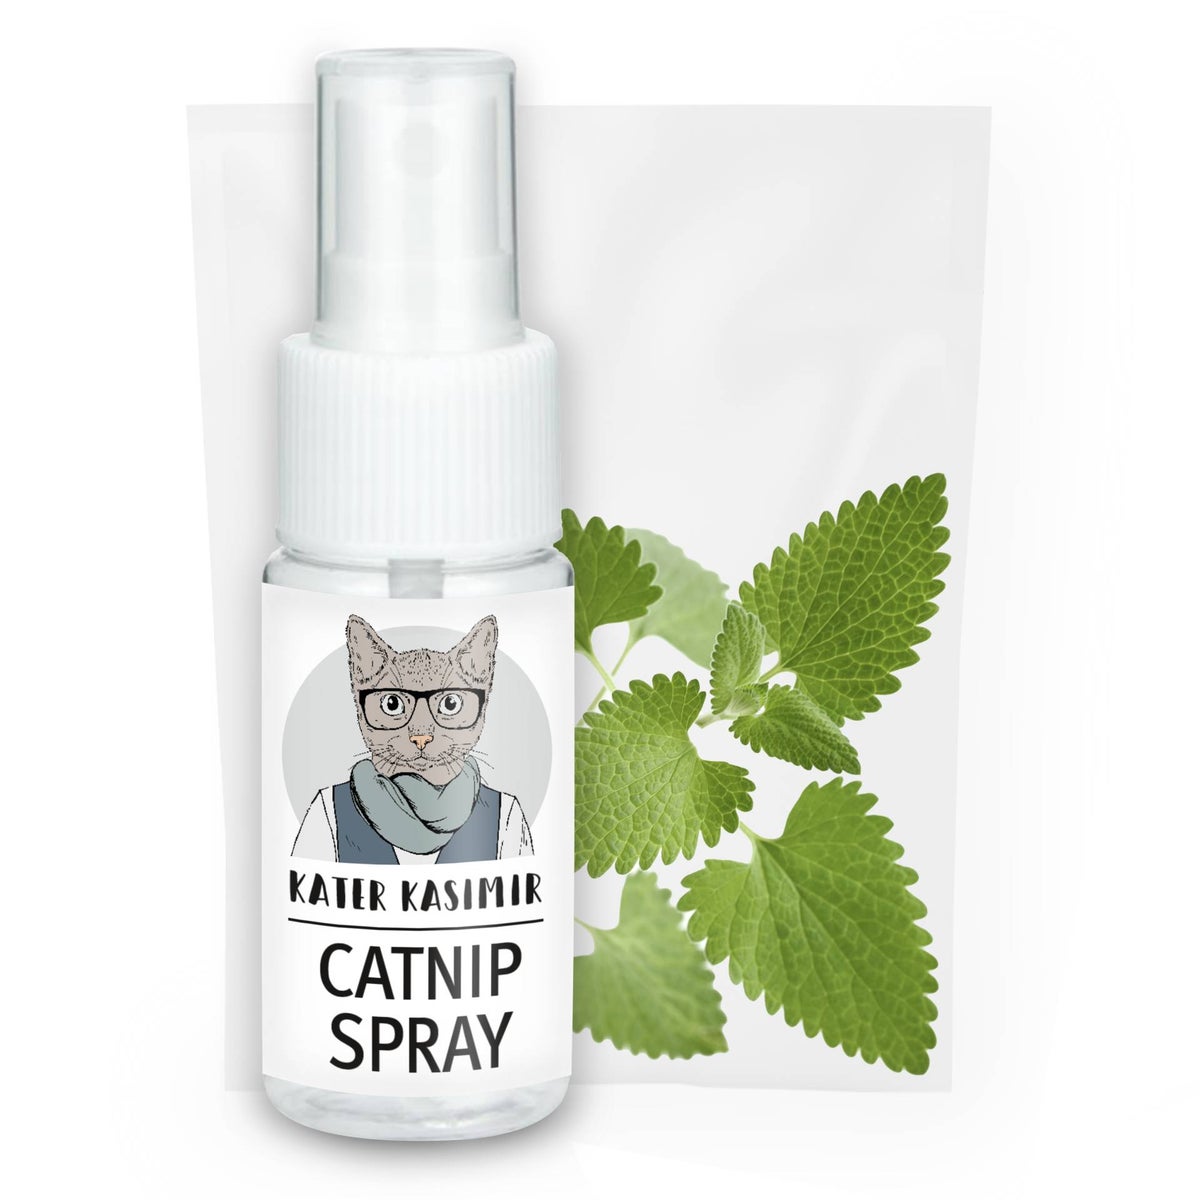 Katzenminze Spray für Katzen. Zum Auftragen auf einen Kratzbaum oder auf Katzenspielzeug. Rein natürlich ohne Zusatzstoffe